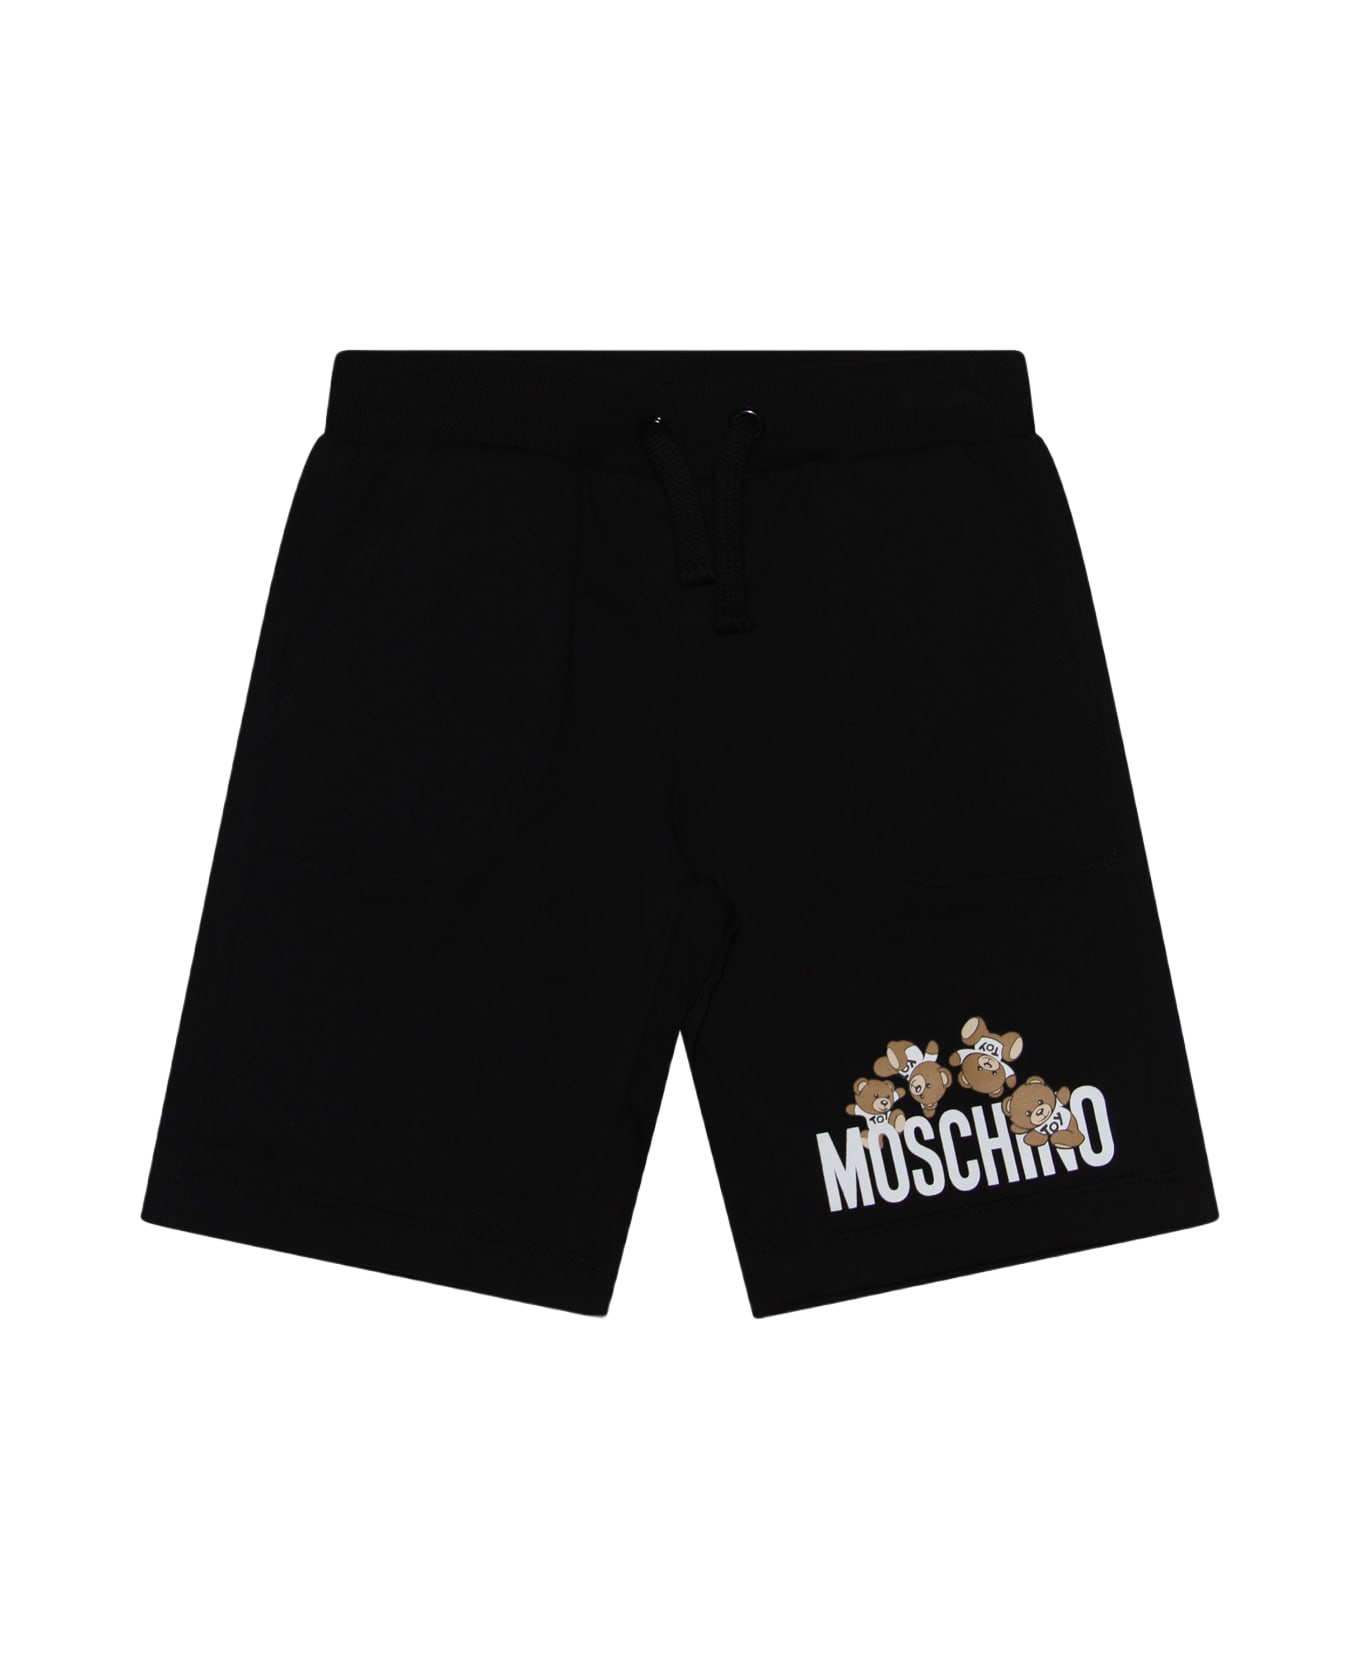 Moschino Black Cotton Shorts - Nero